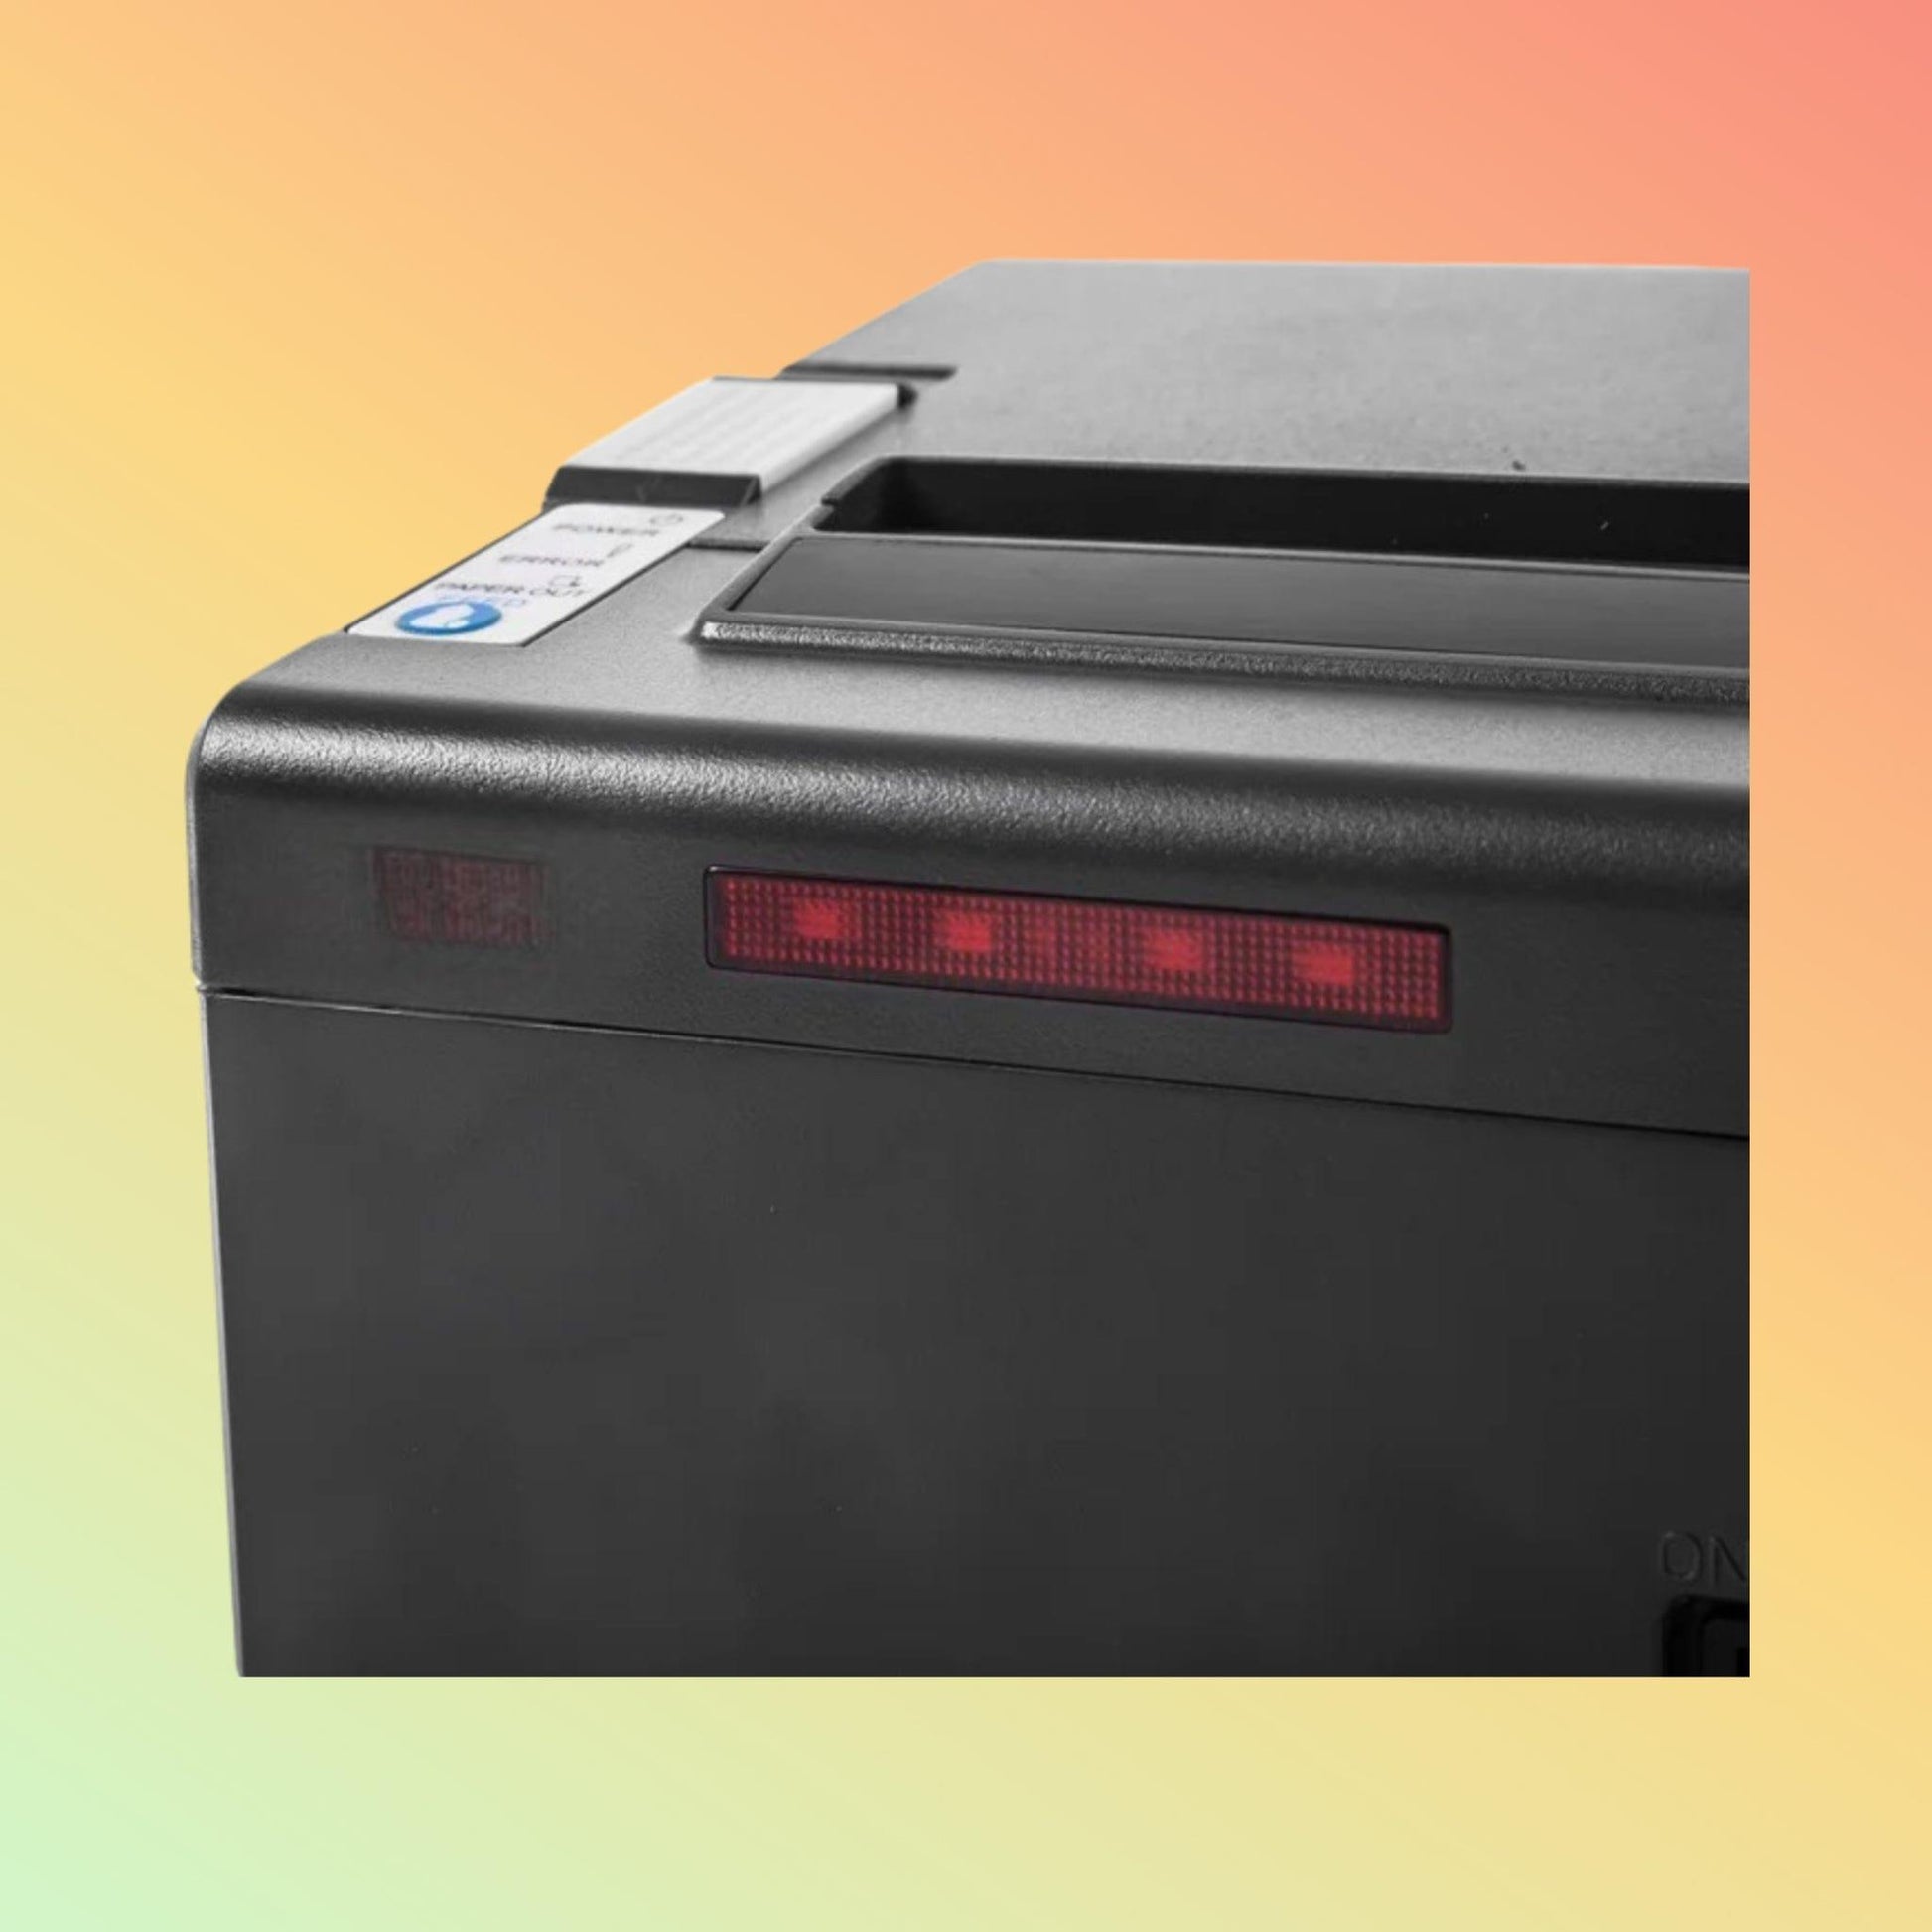 Receipt Printer - Postech PT-88VIII - Neotech